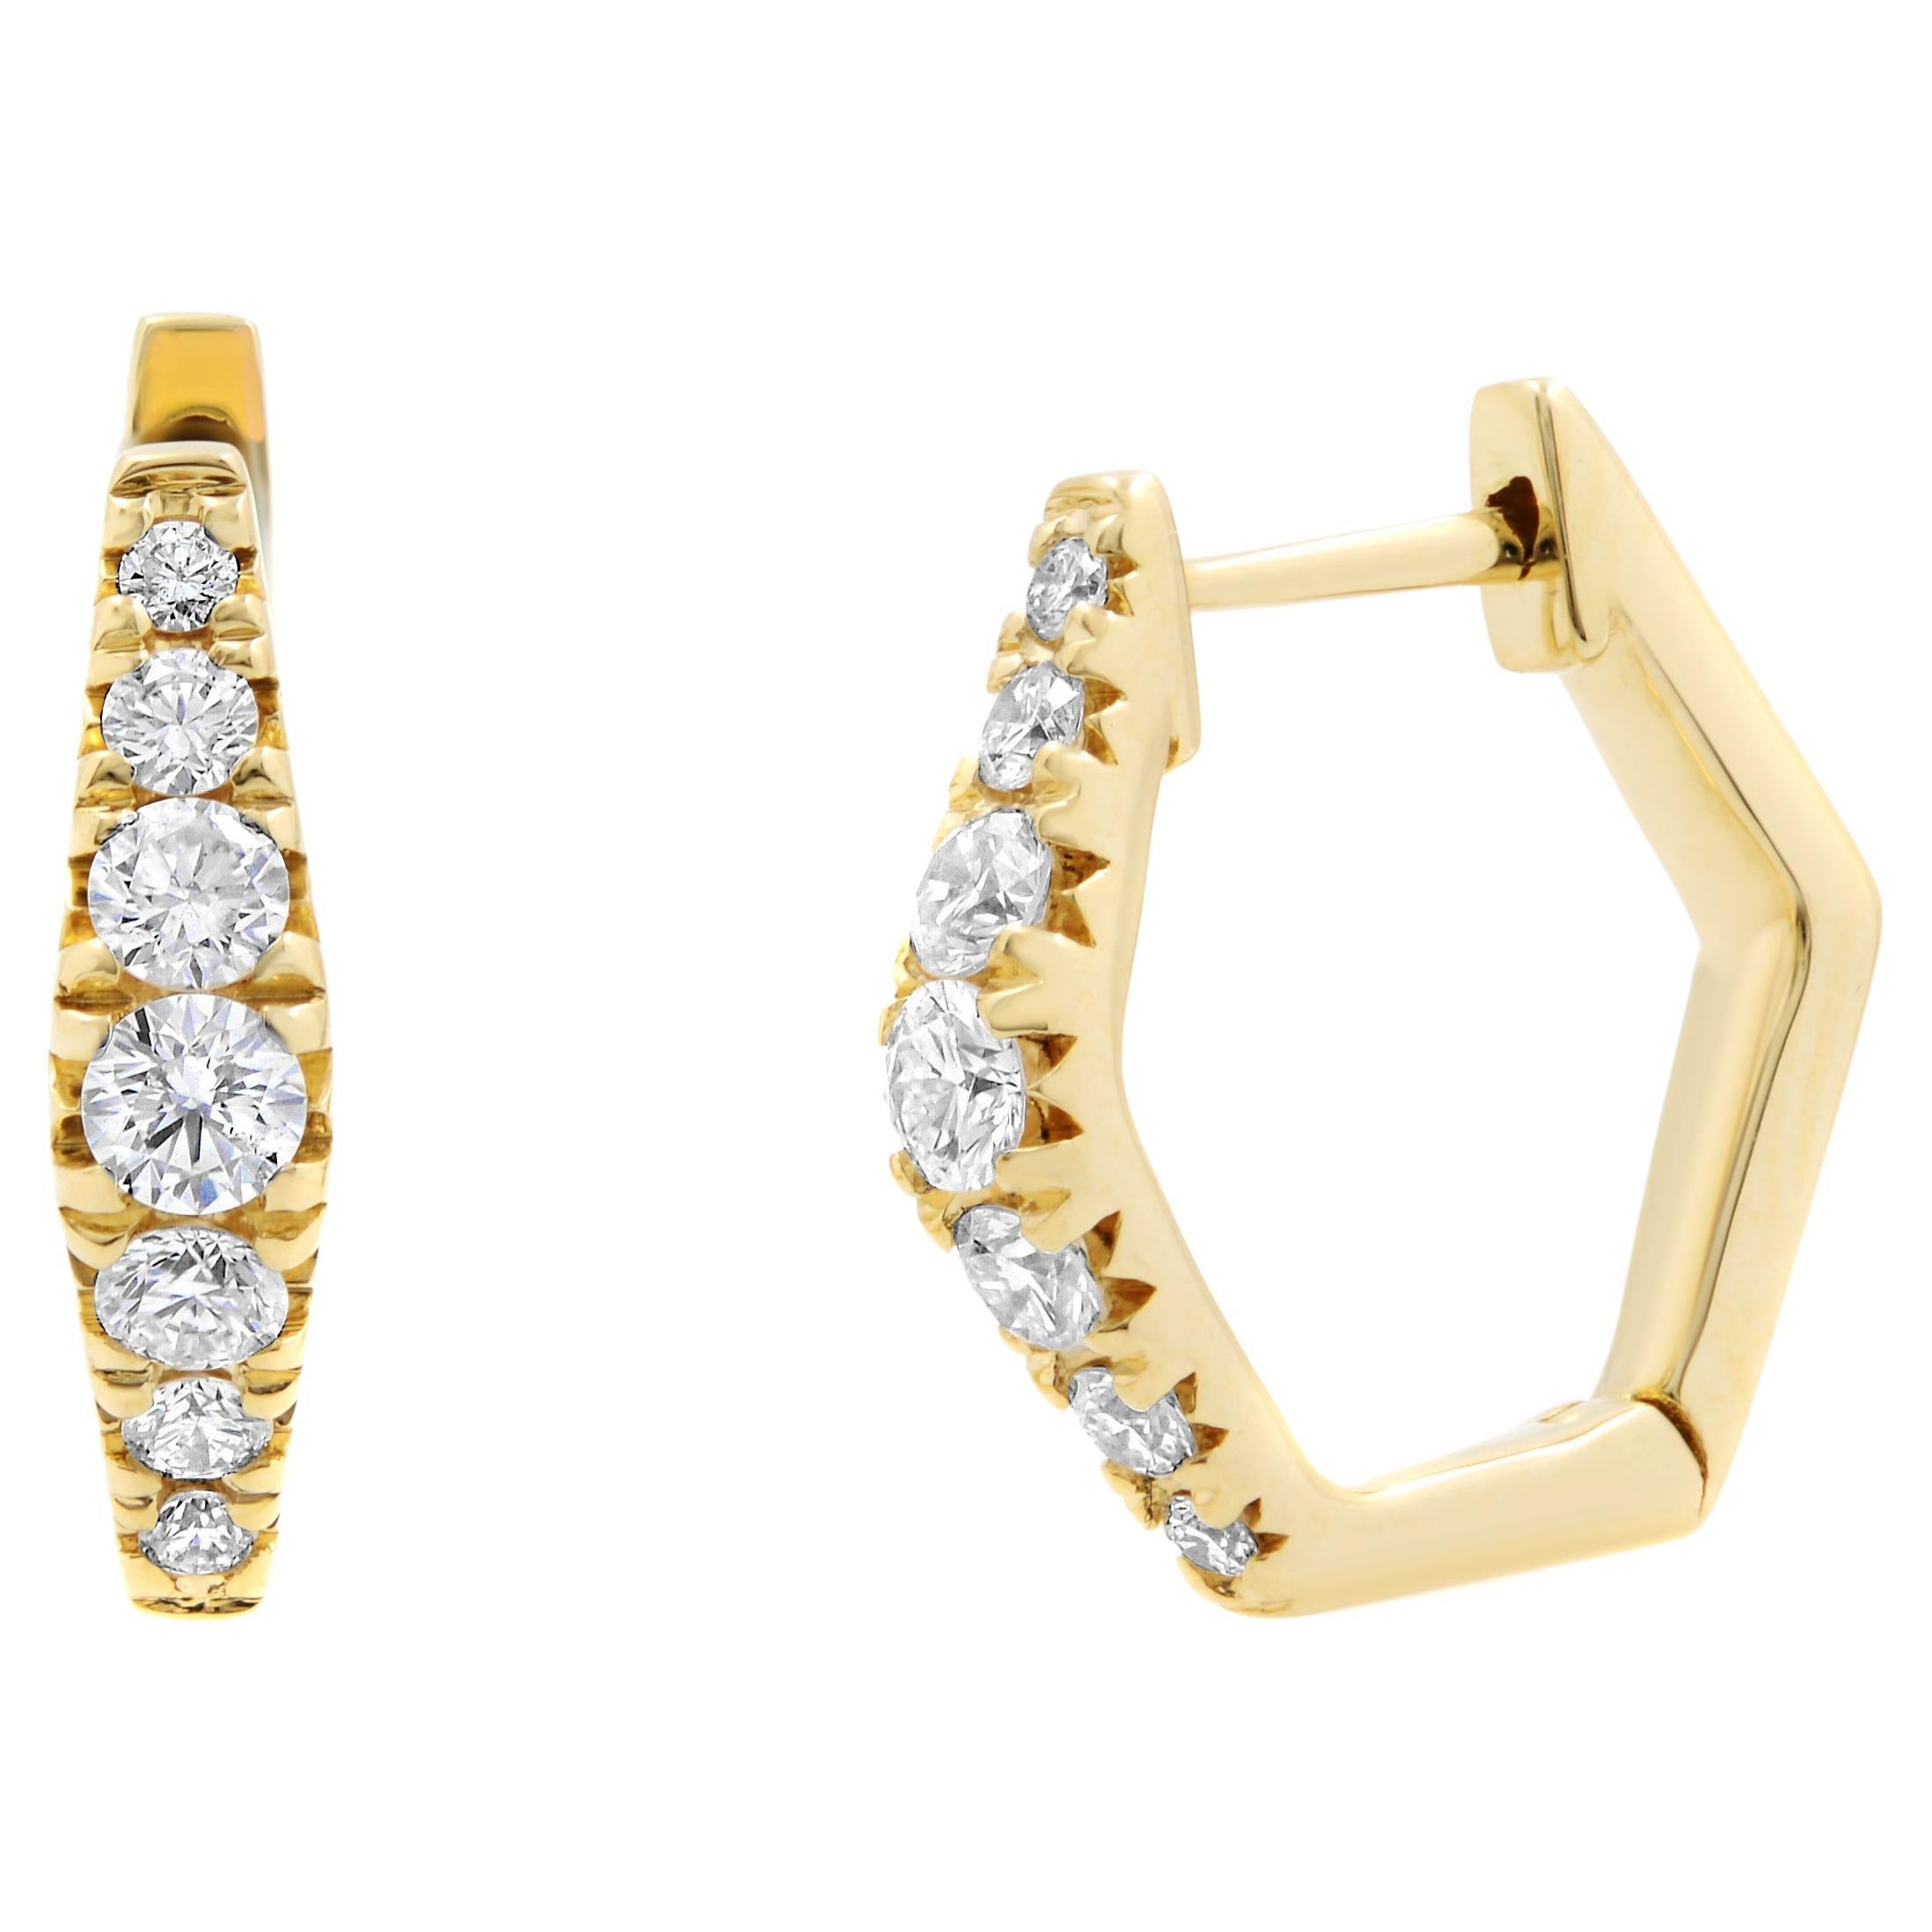 Rachel Koen Hexagon Diamond Huggie Earrings 14K Yellow Gold 0.49cttw For Sale